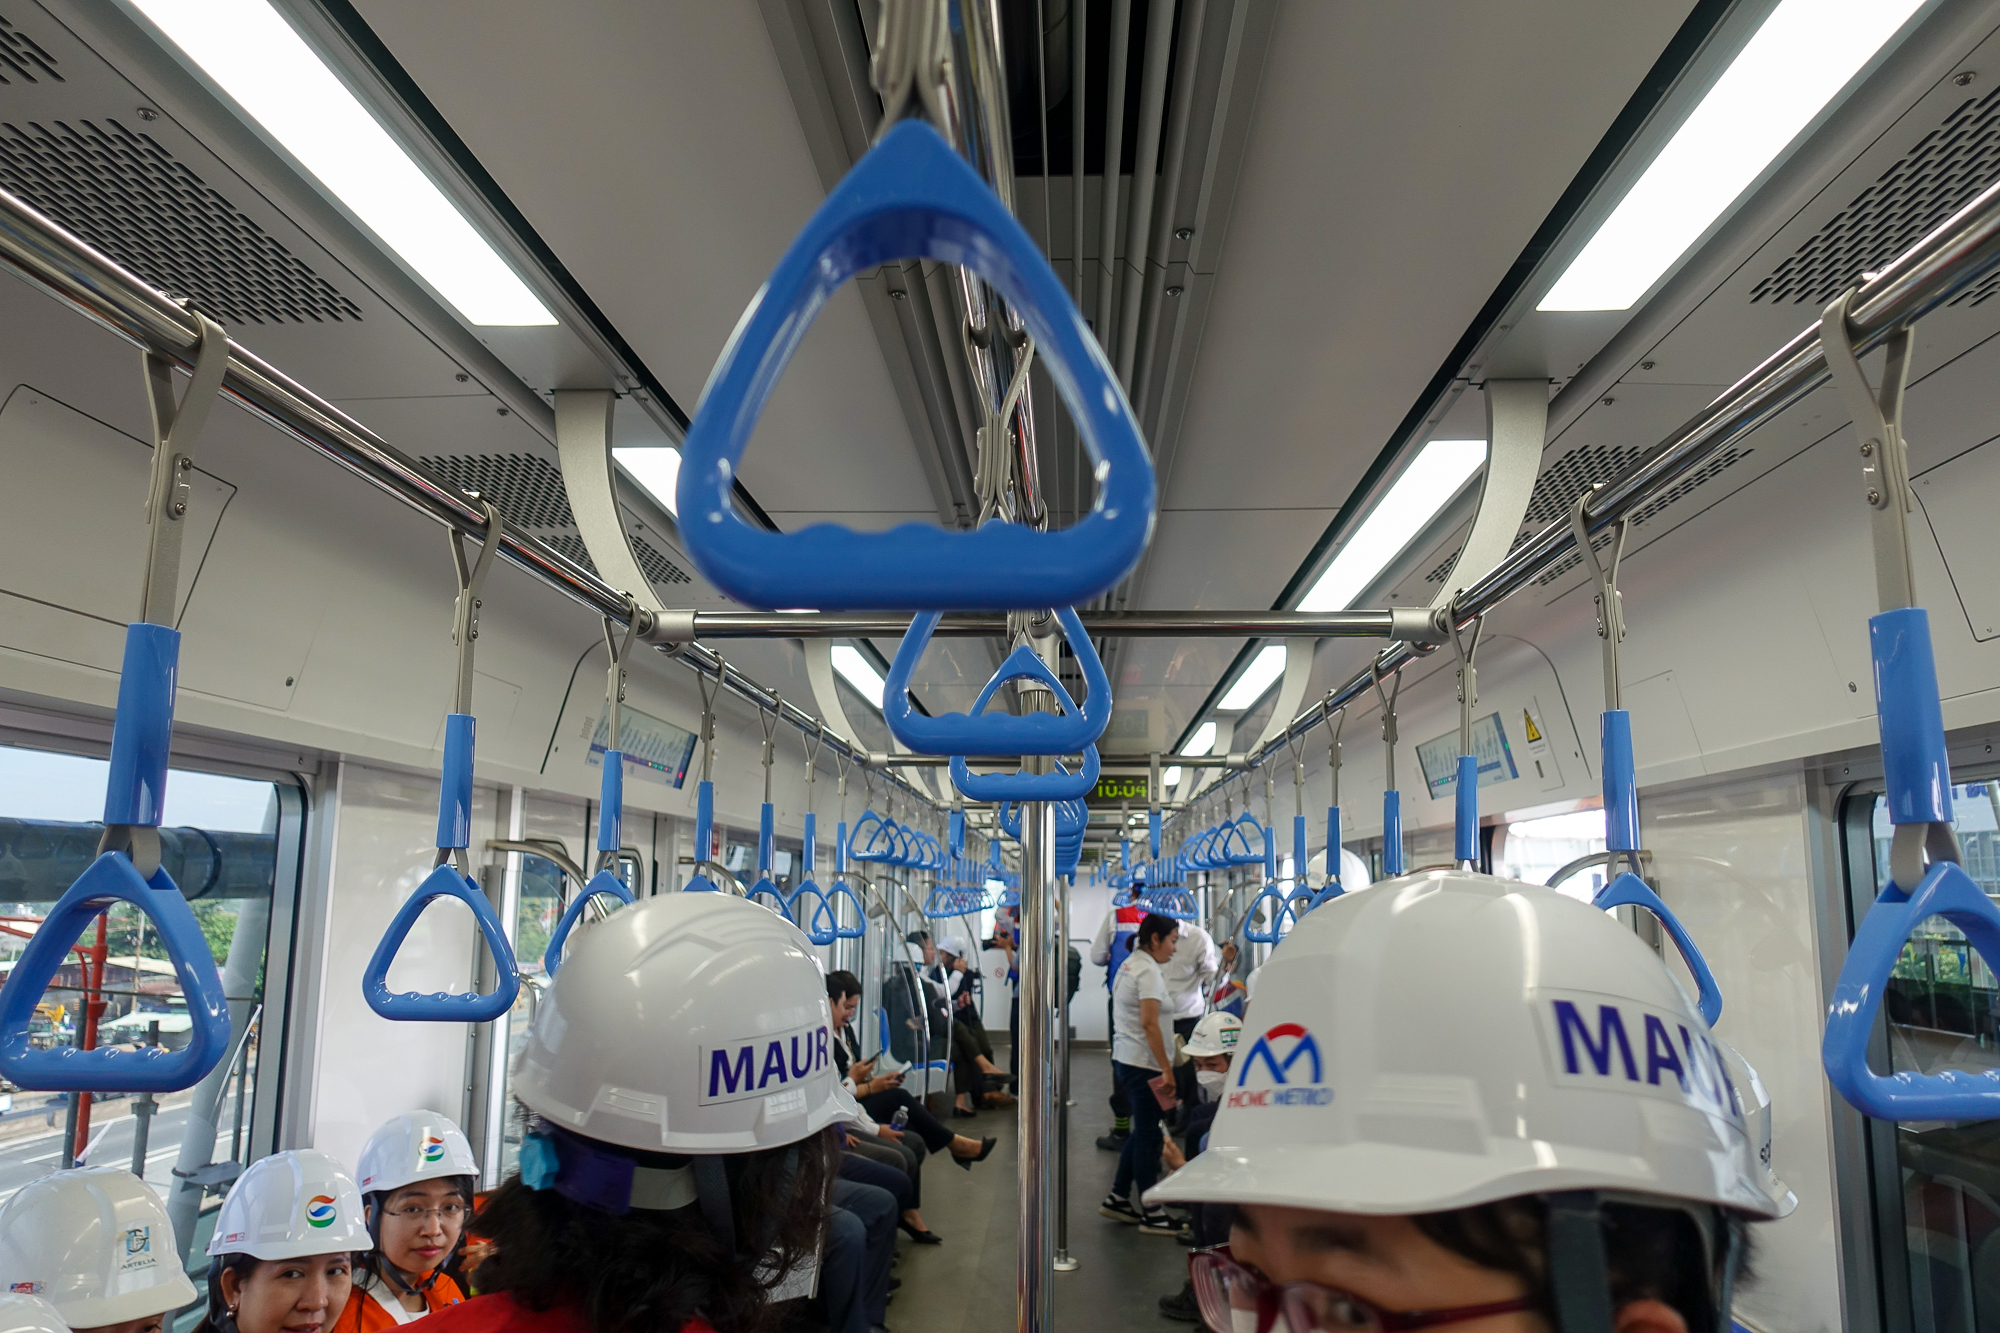 Tàu Metro số 1 TP.HCM chính chức lăn bánh chạy thử, khách thích thú lần đầu tiên được trải nghiệm  - Ảnh 9.